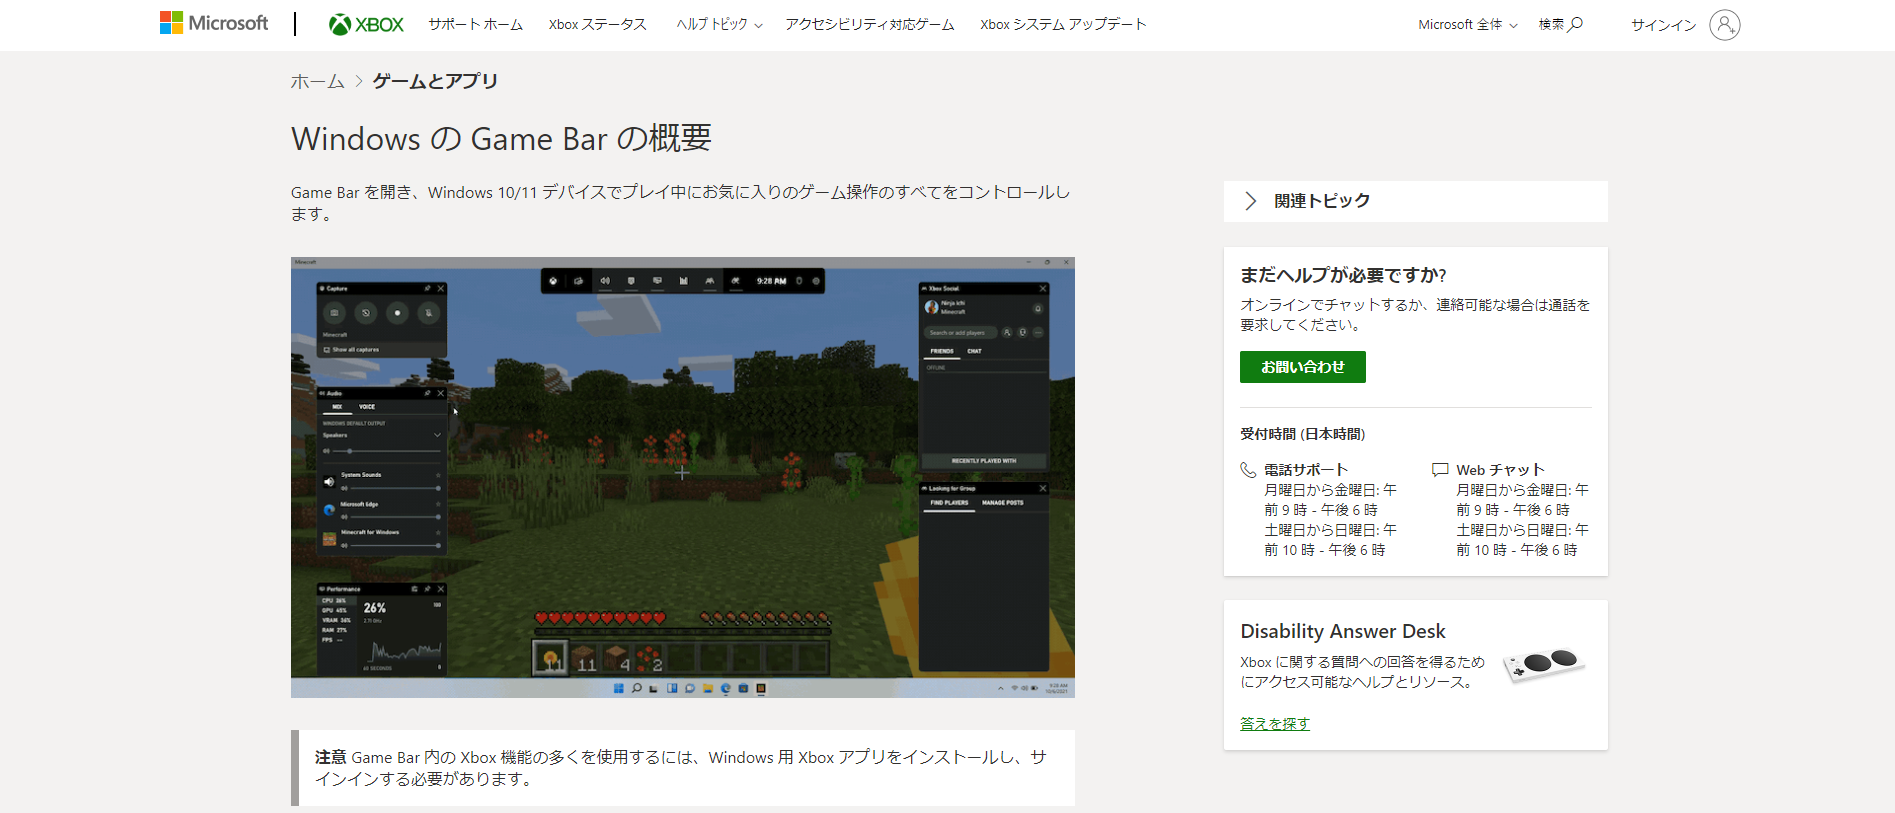 Xbox Game Bar Windowsユーザーのための録画ツール